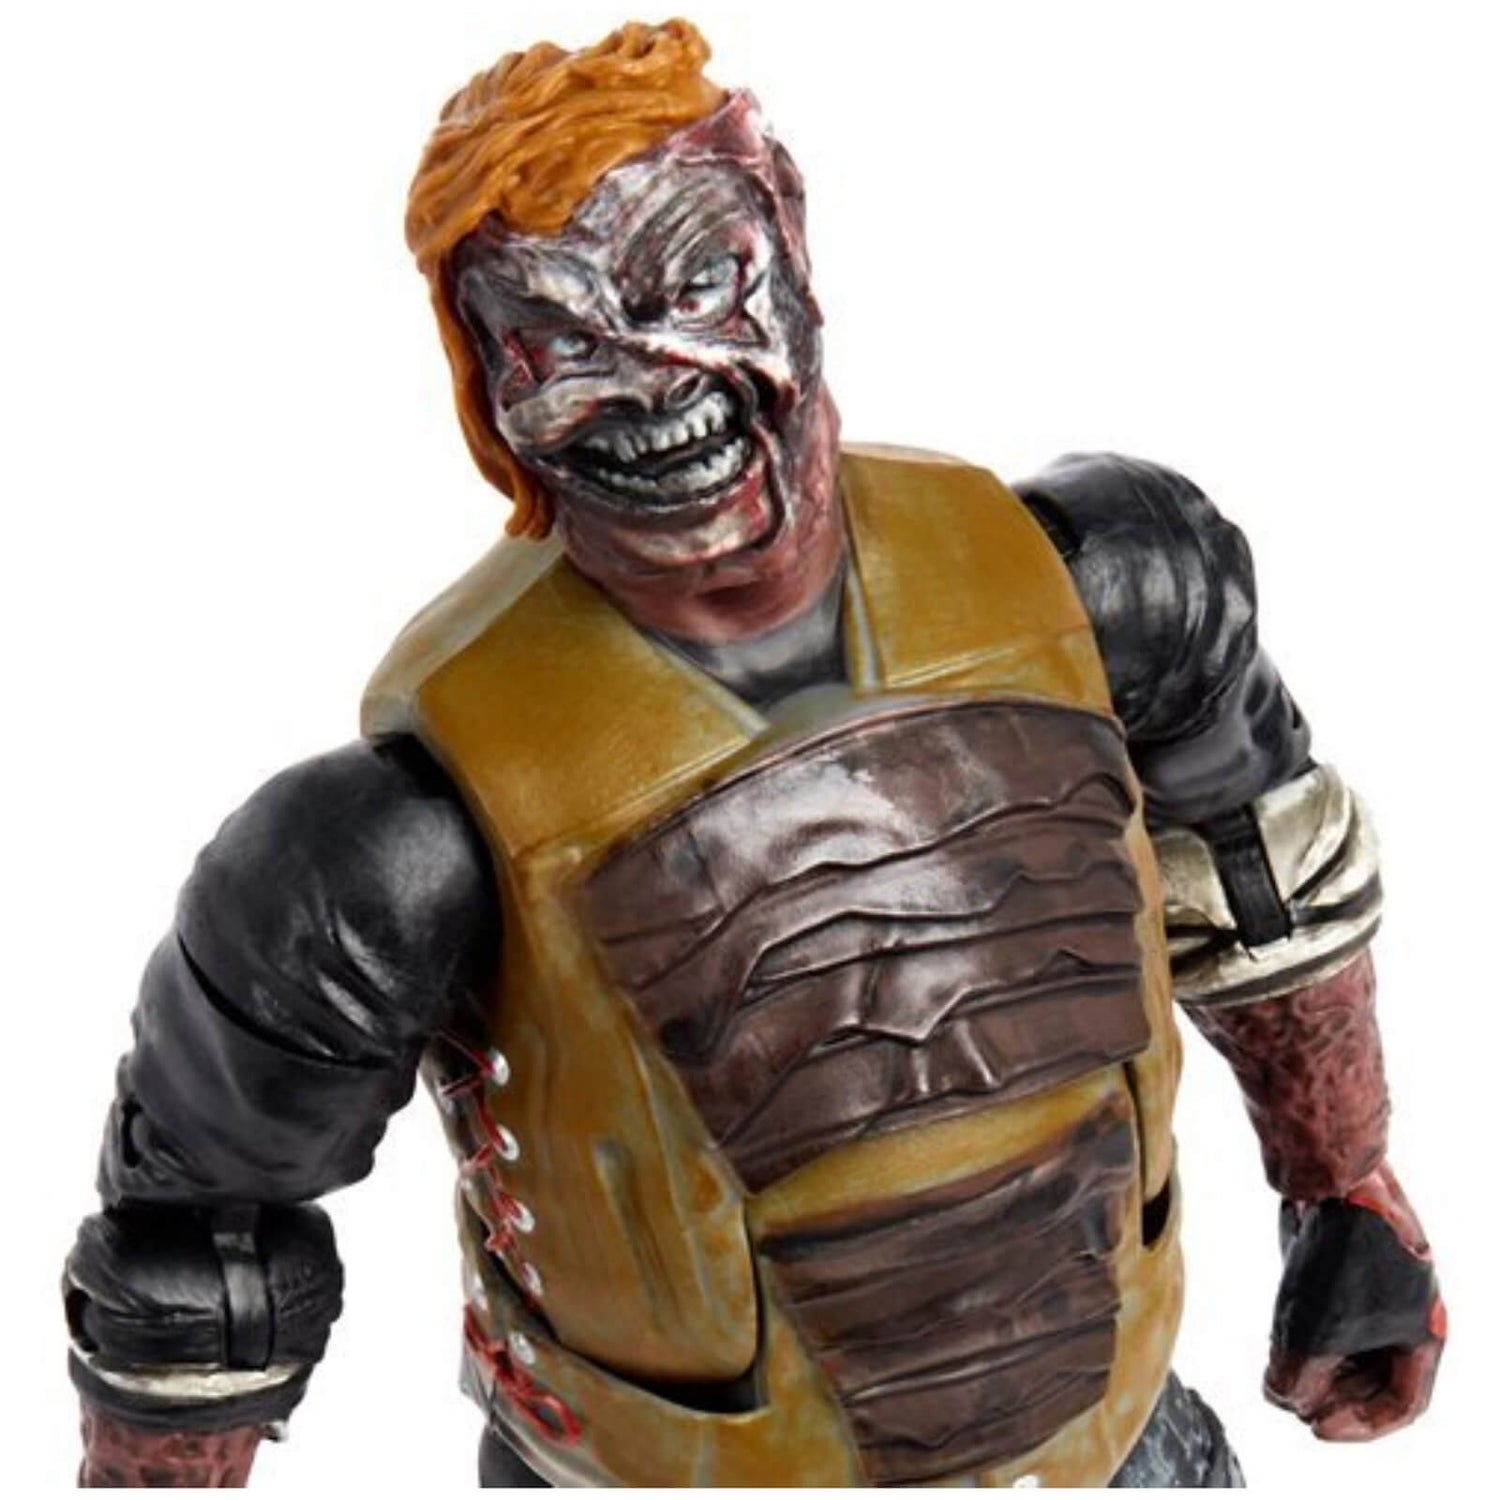 Mattel WWE Elite Collection Action Figure - "The Fiend" Bray Wyatt